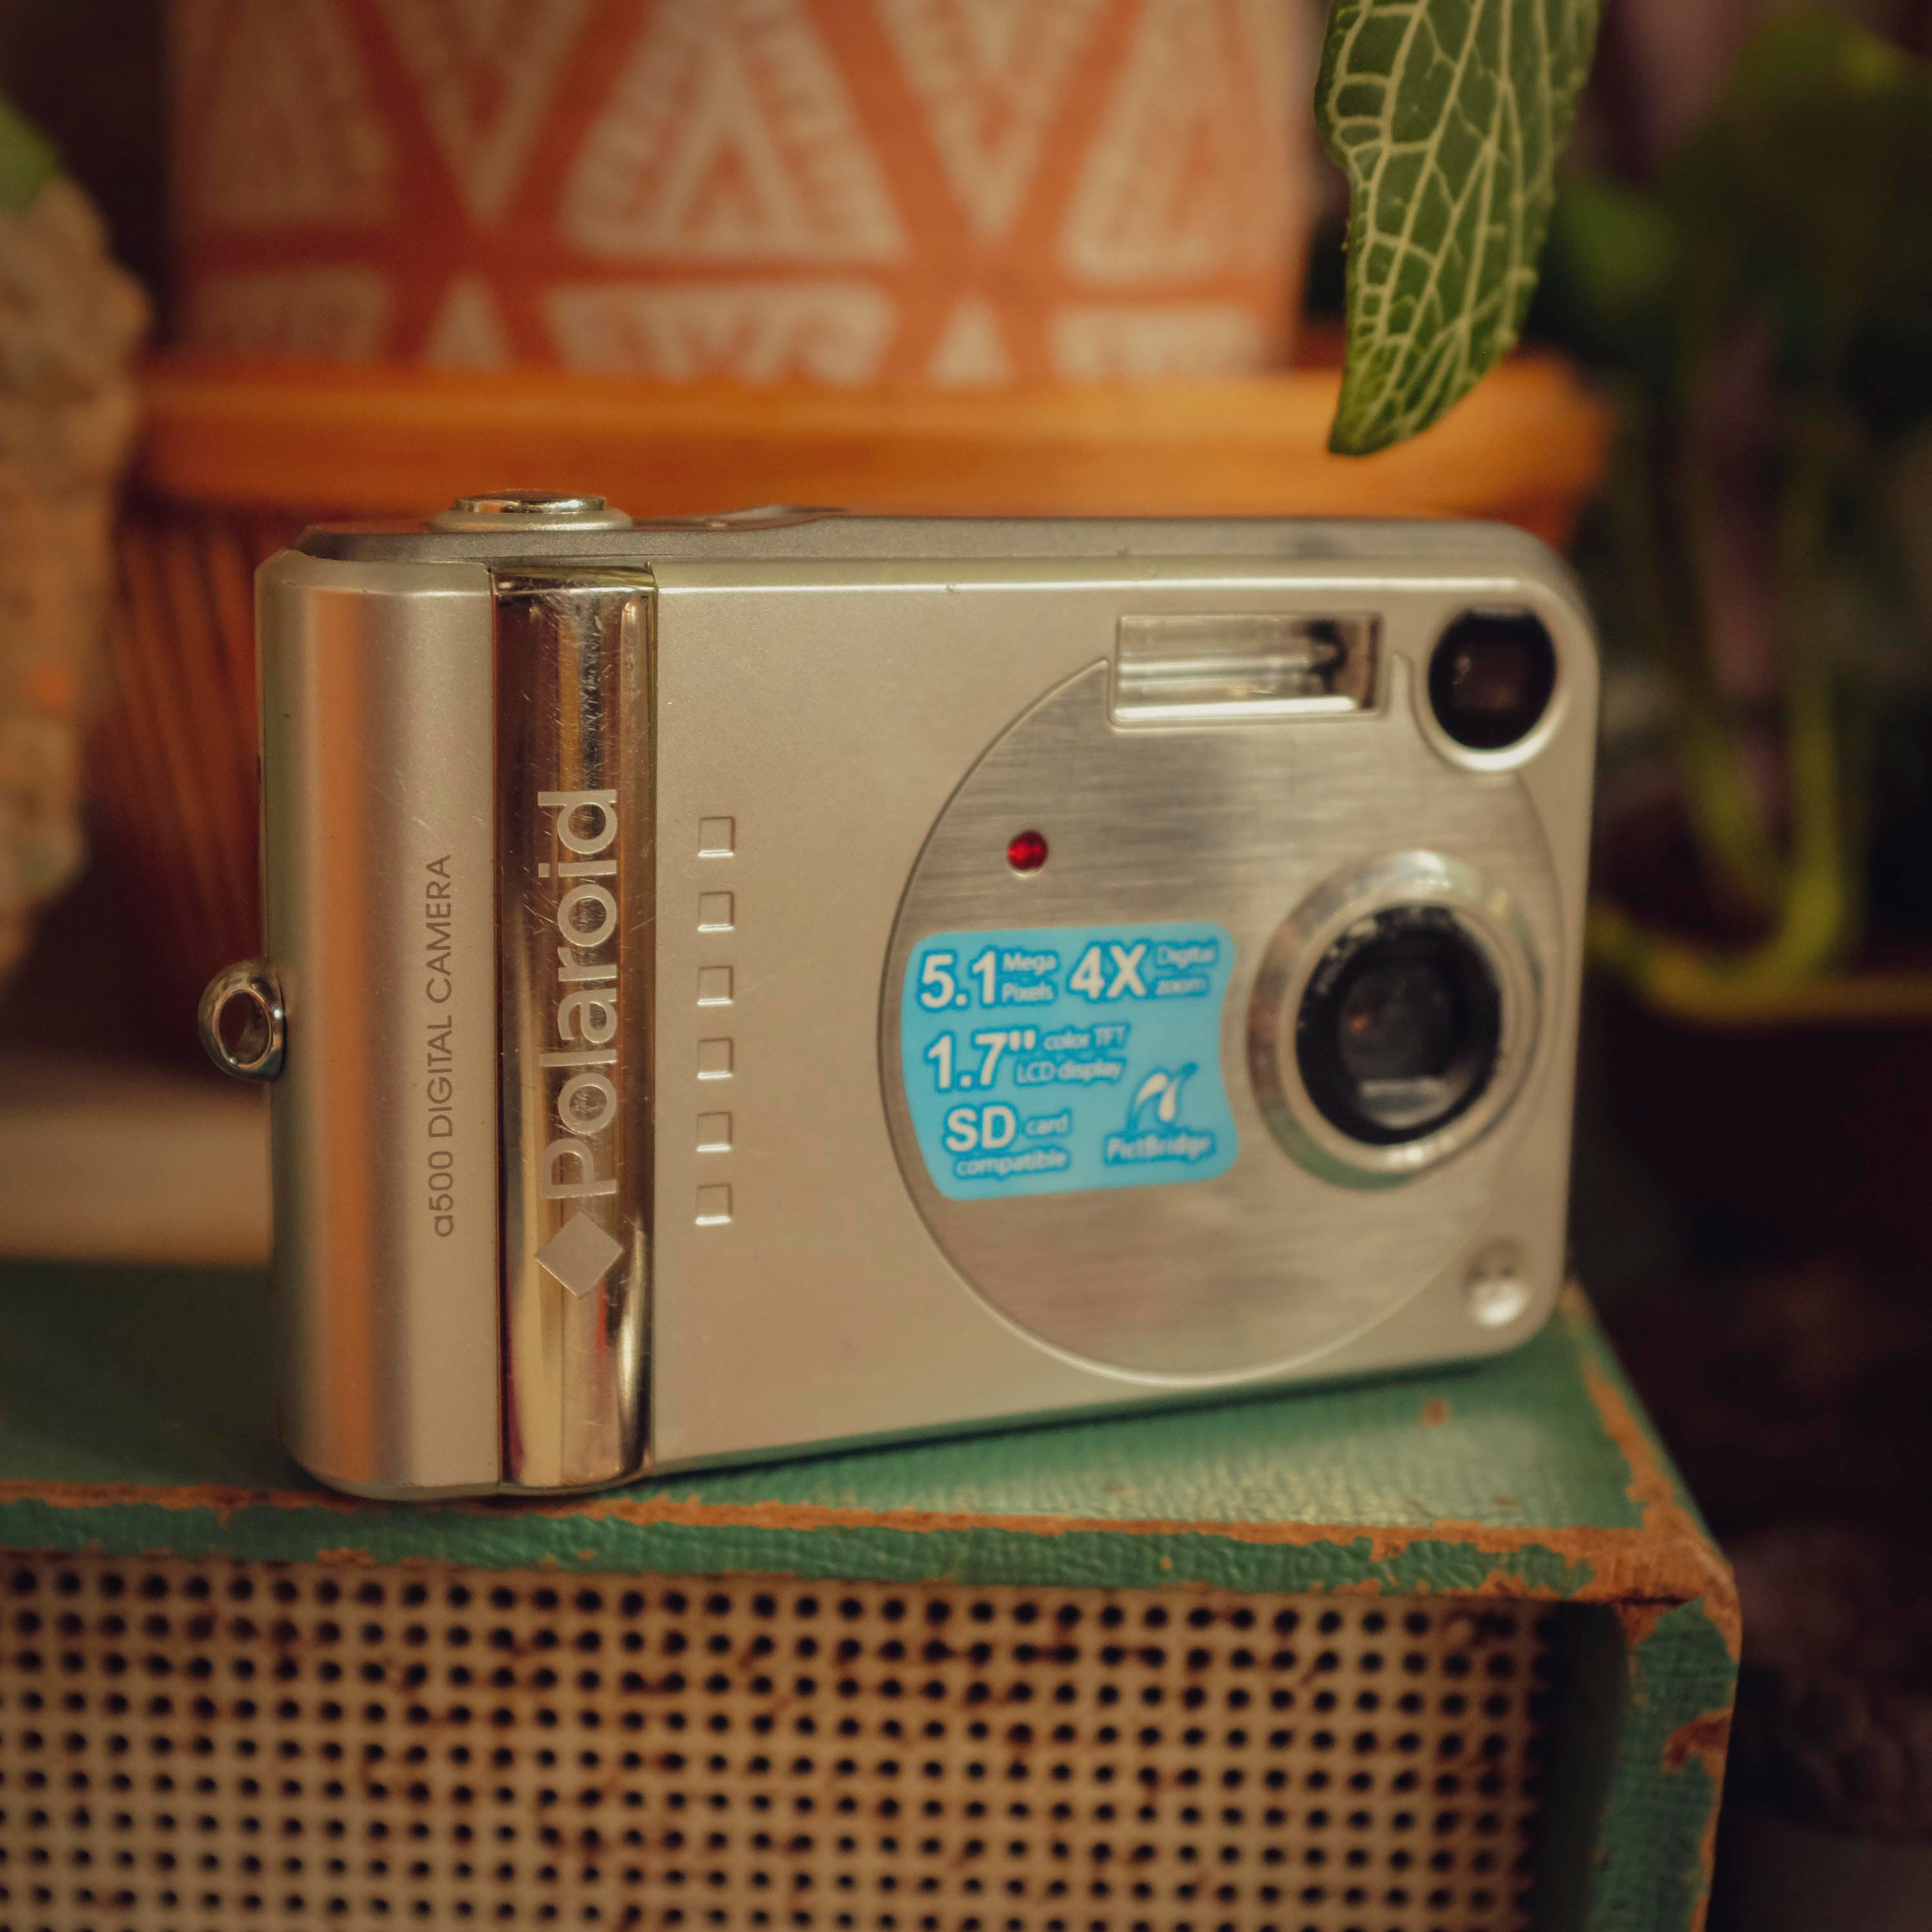 Cámara Compacta Polaroid a500 - 5,1 Megapíxel - Violeta